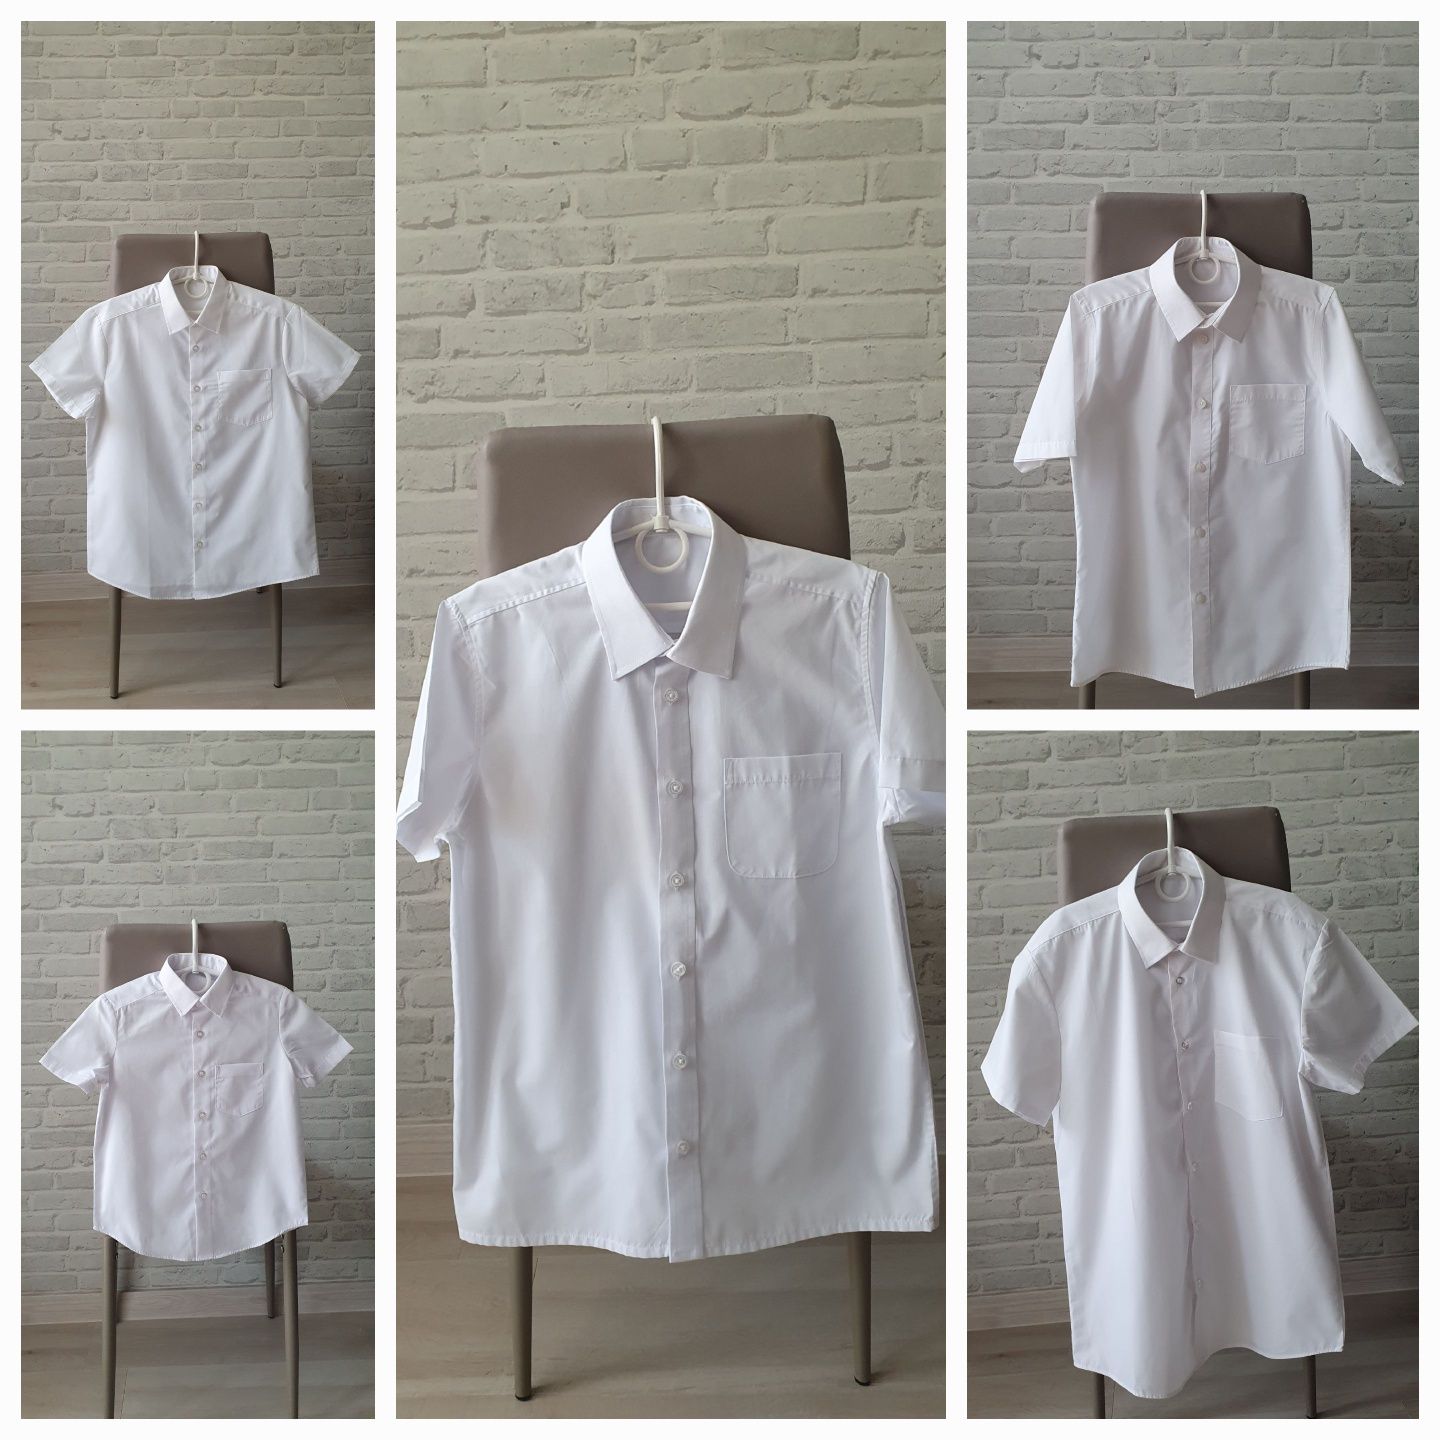 Белые рубашки George, Next, Matalan 3-14л.,новые